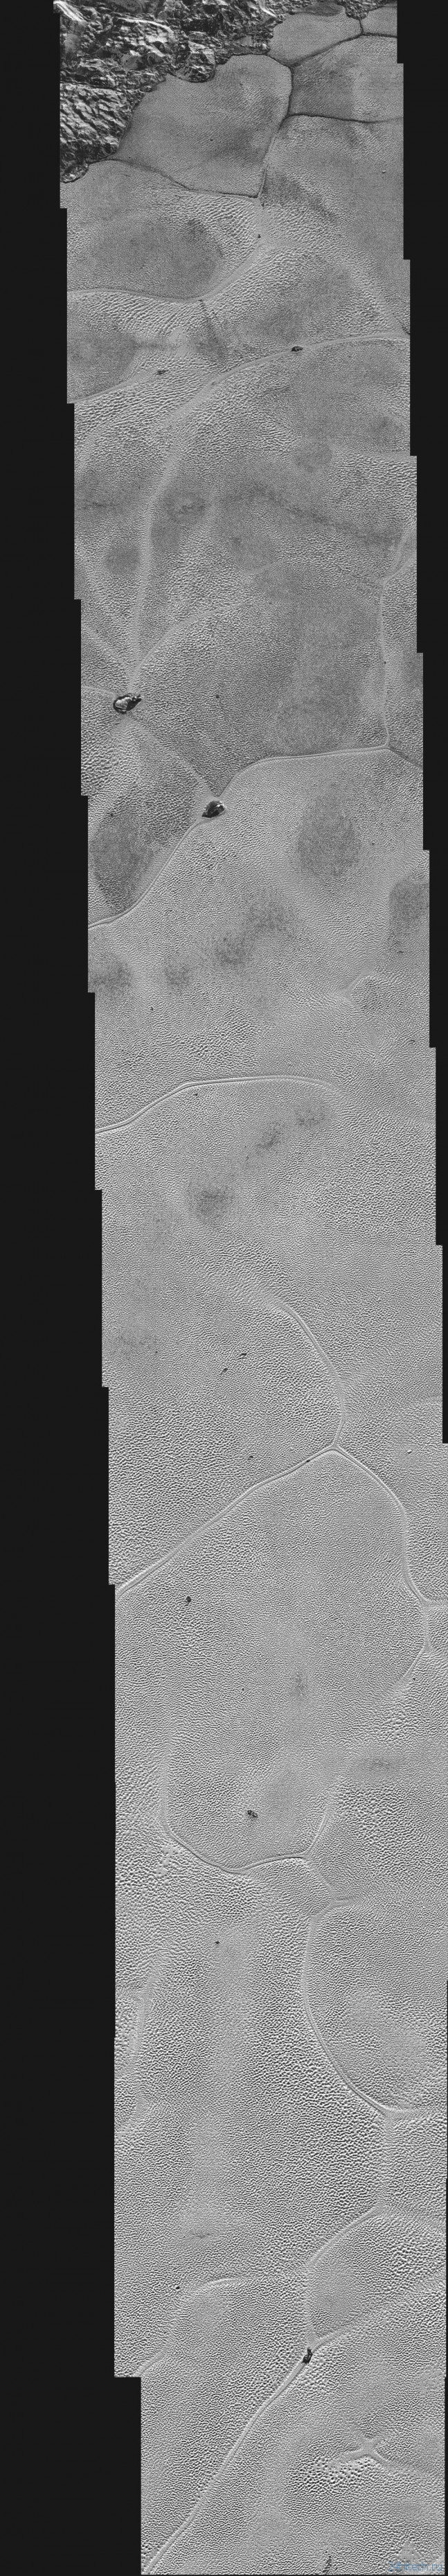 Получены новые фотографии Плутона